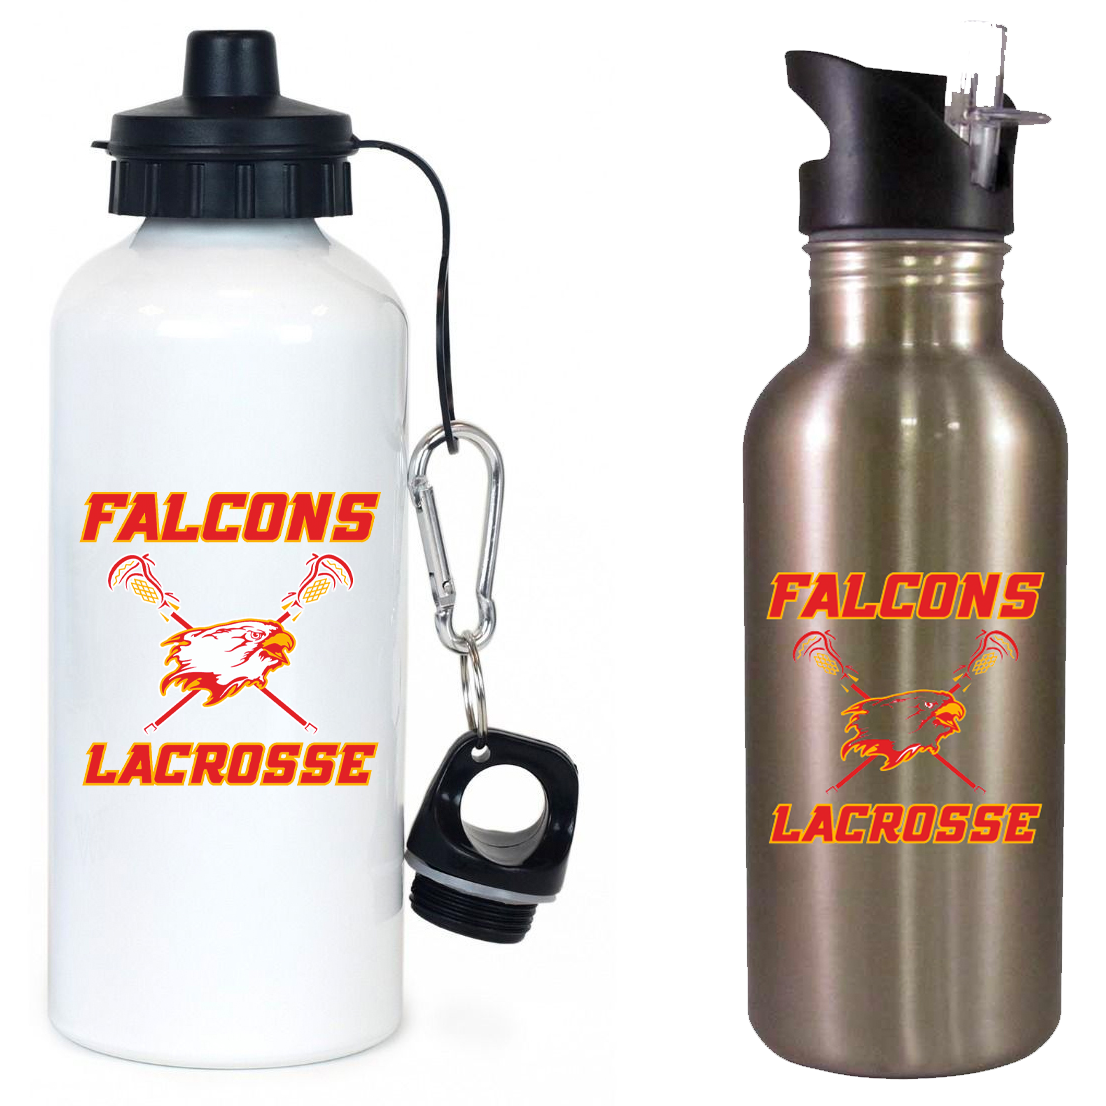 Falcons Lacrosse Club Team Water Bottle